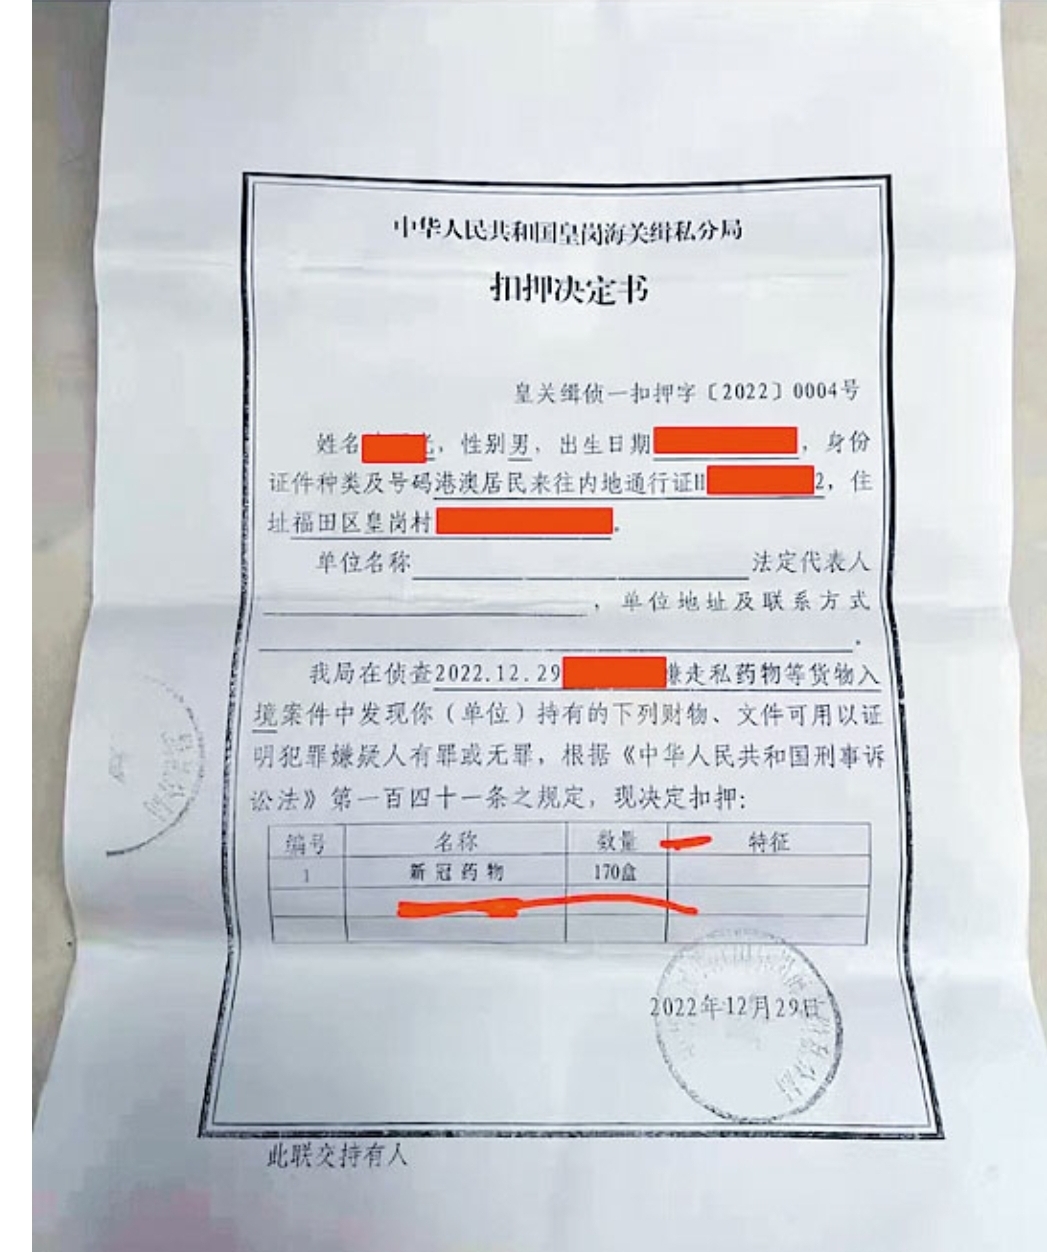  網傳的深圳皇崗海關扣押決定書。網絡圖片